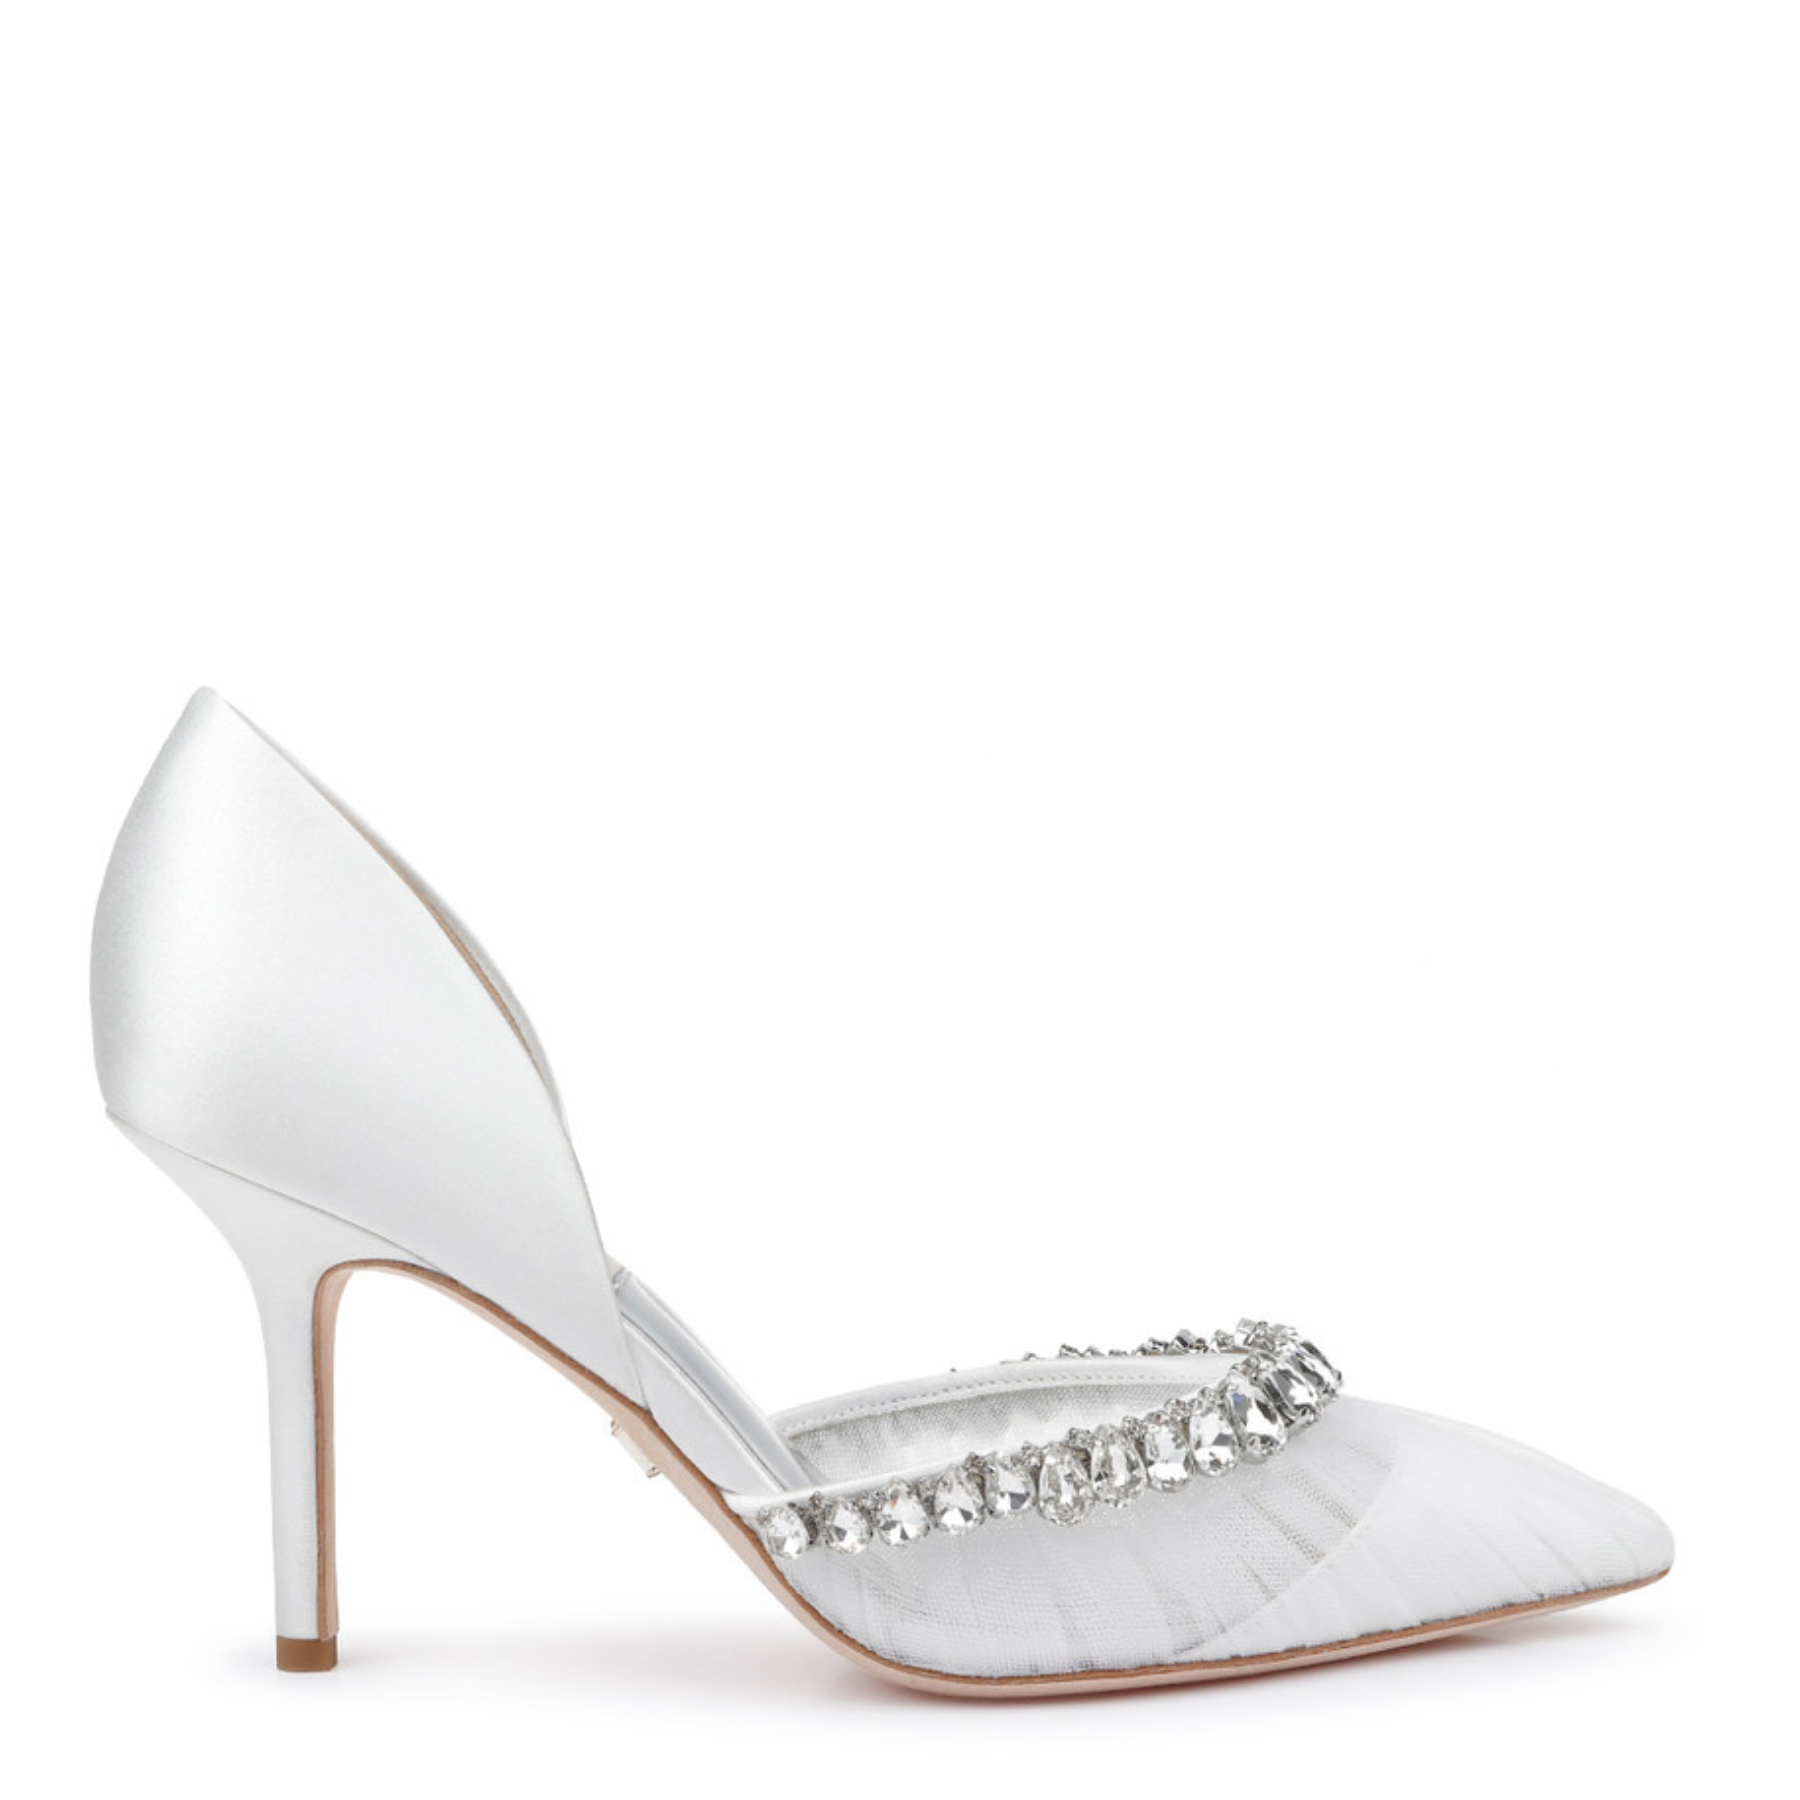 Badgley Mischka Bridal Shoes | Stunning Badgley Mischka Wedding Shoes ...